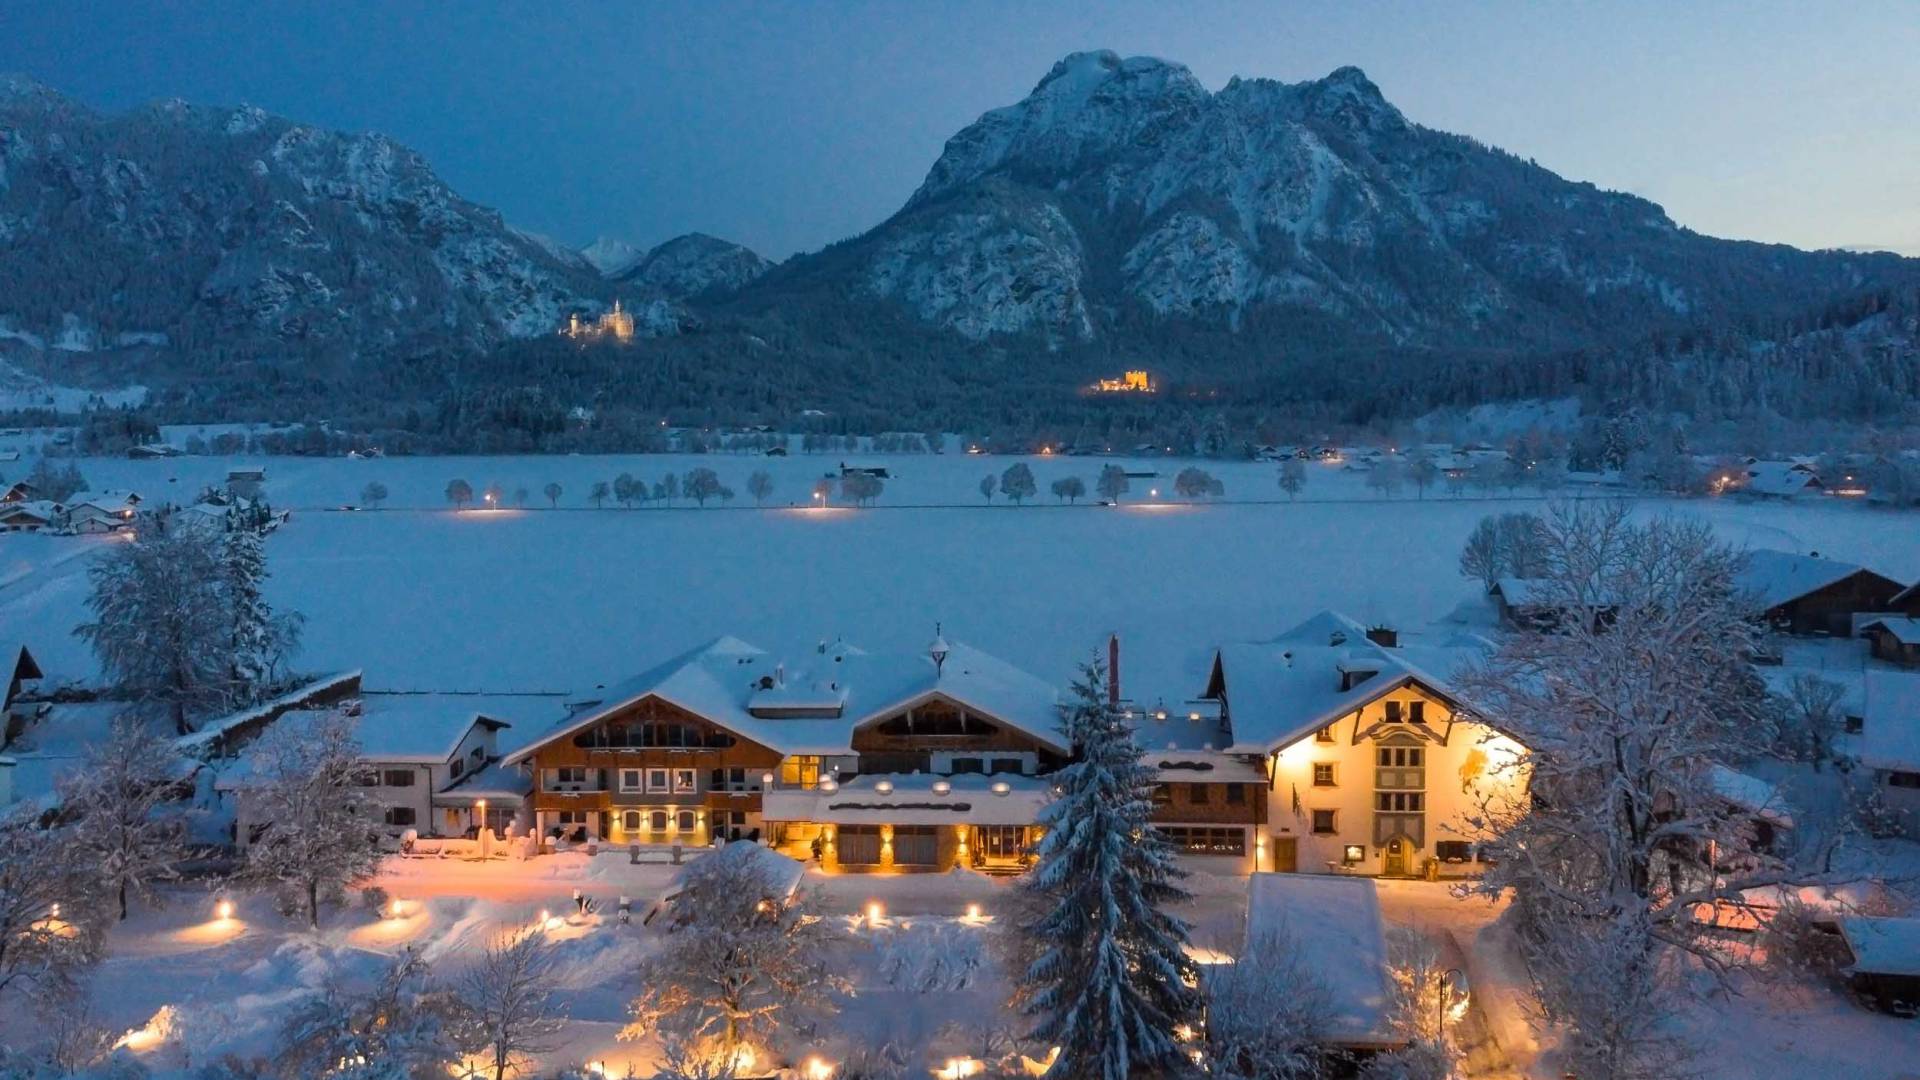 Winterurlaub im Allgäu: Panorama auf Berge und Neuschwanstein